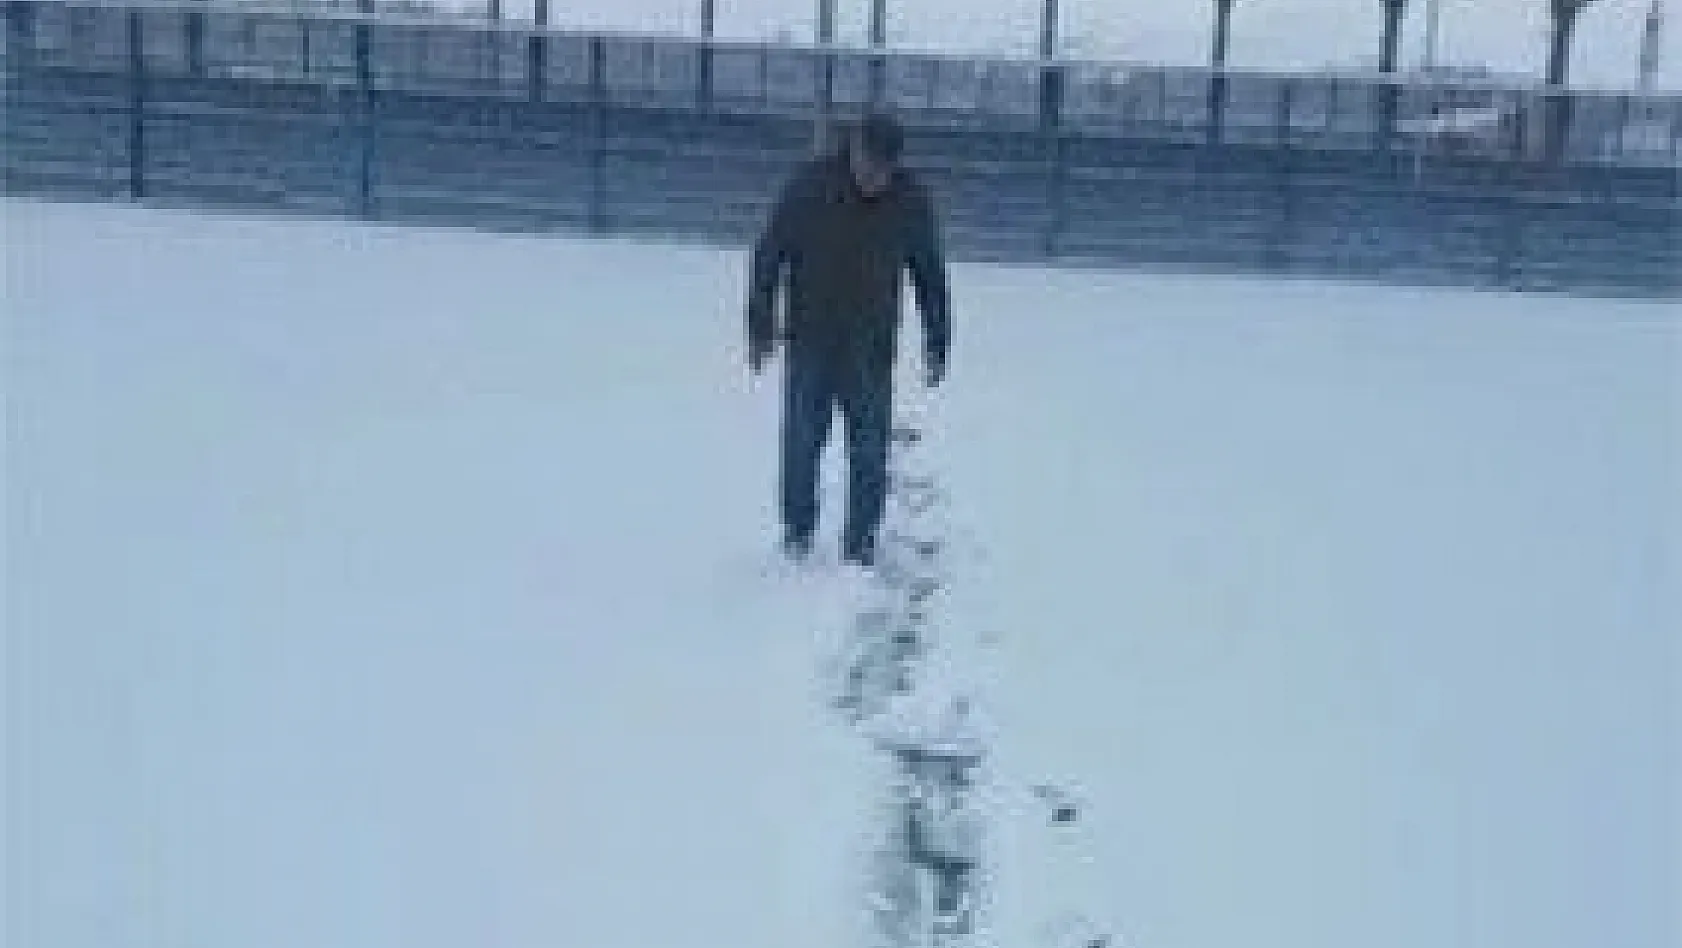 Yoğun kar yağışı Özvatan'da iki futbol maçını erteletti
